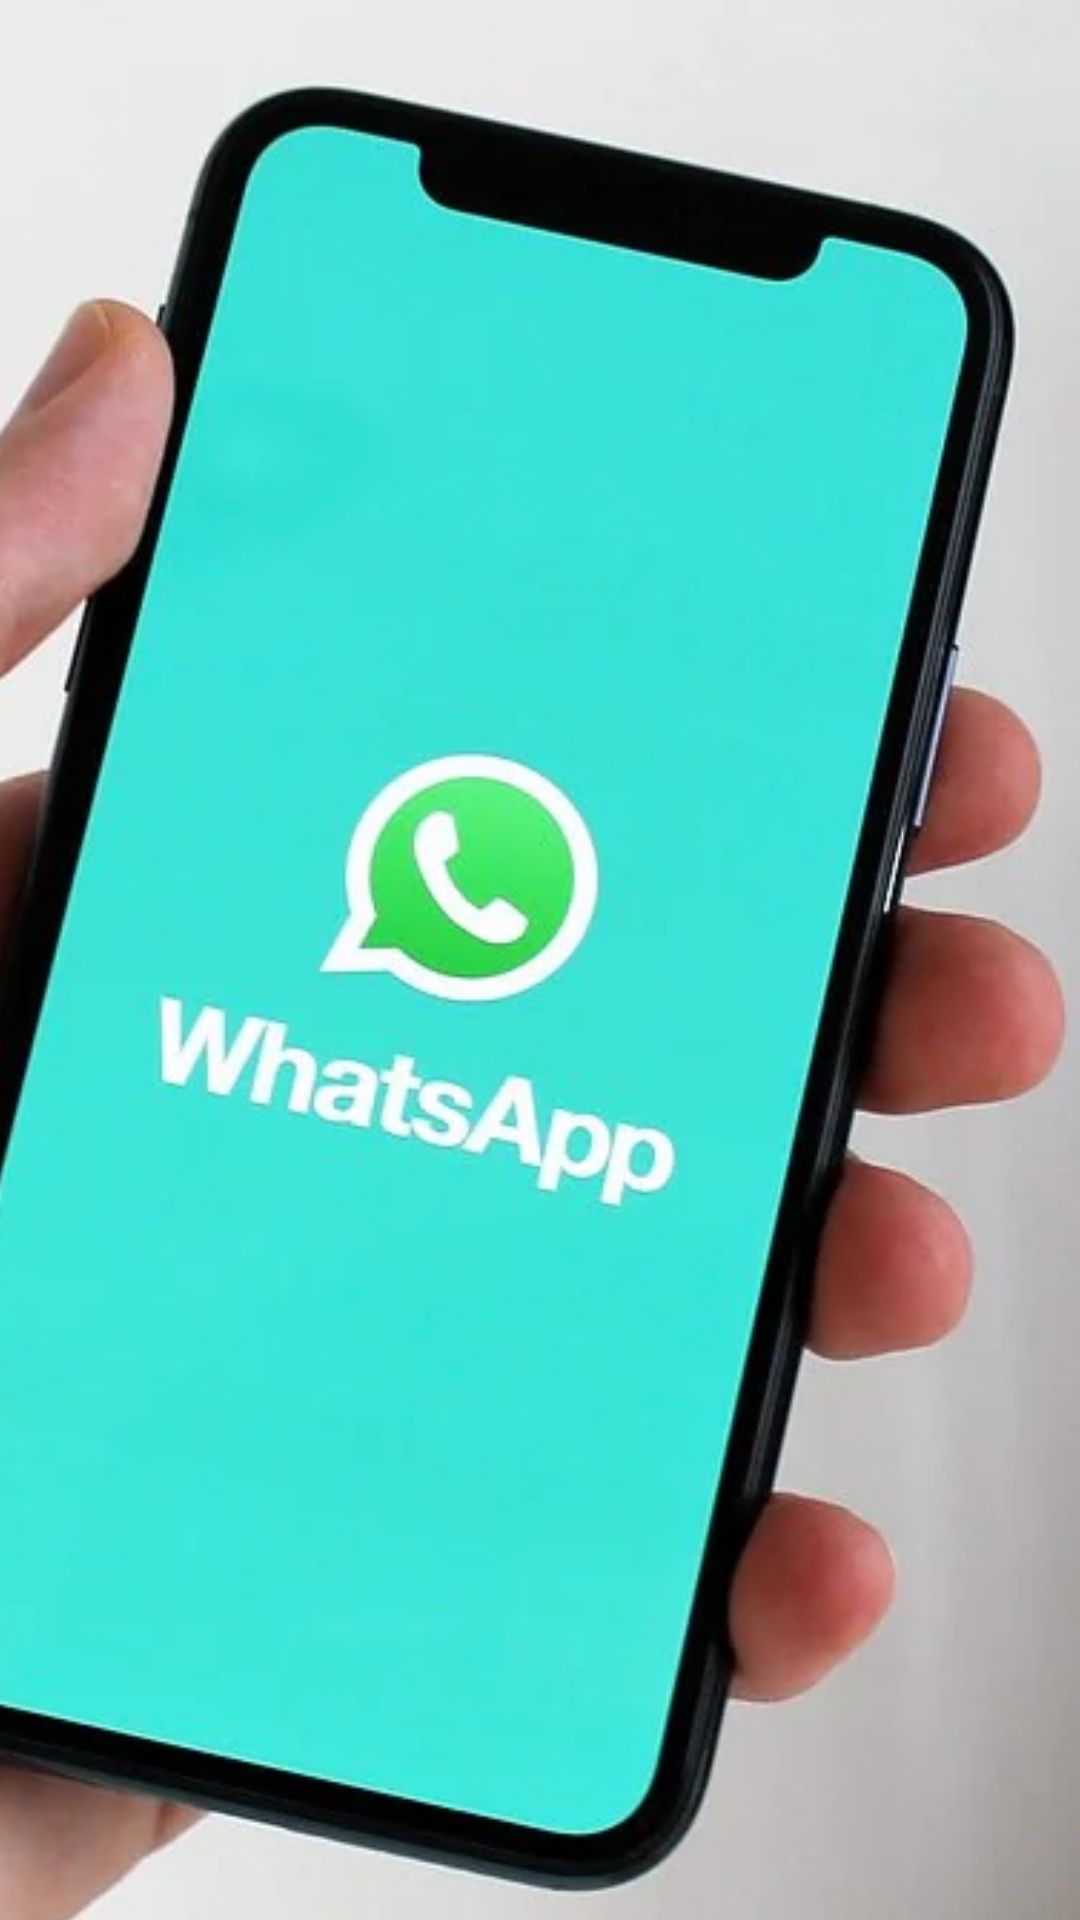 मैसेज और वीडियो कॉल के लिए ज्यादातर whatsapp का इस्तेमाल किया जाता है। 